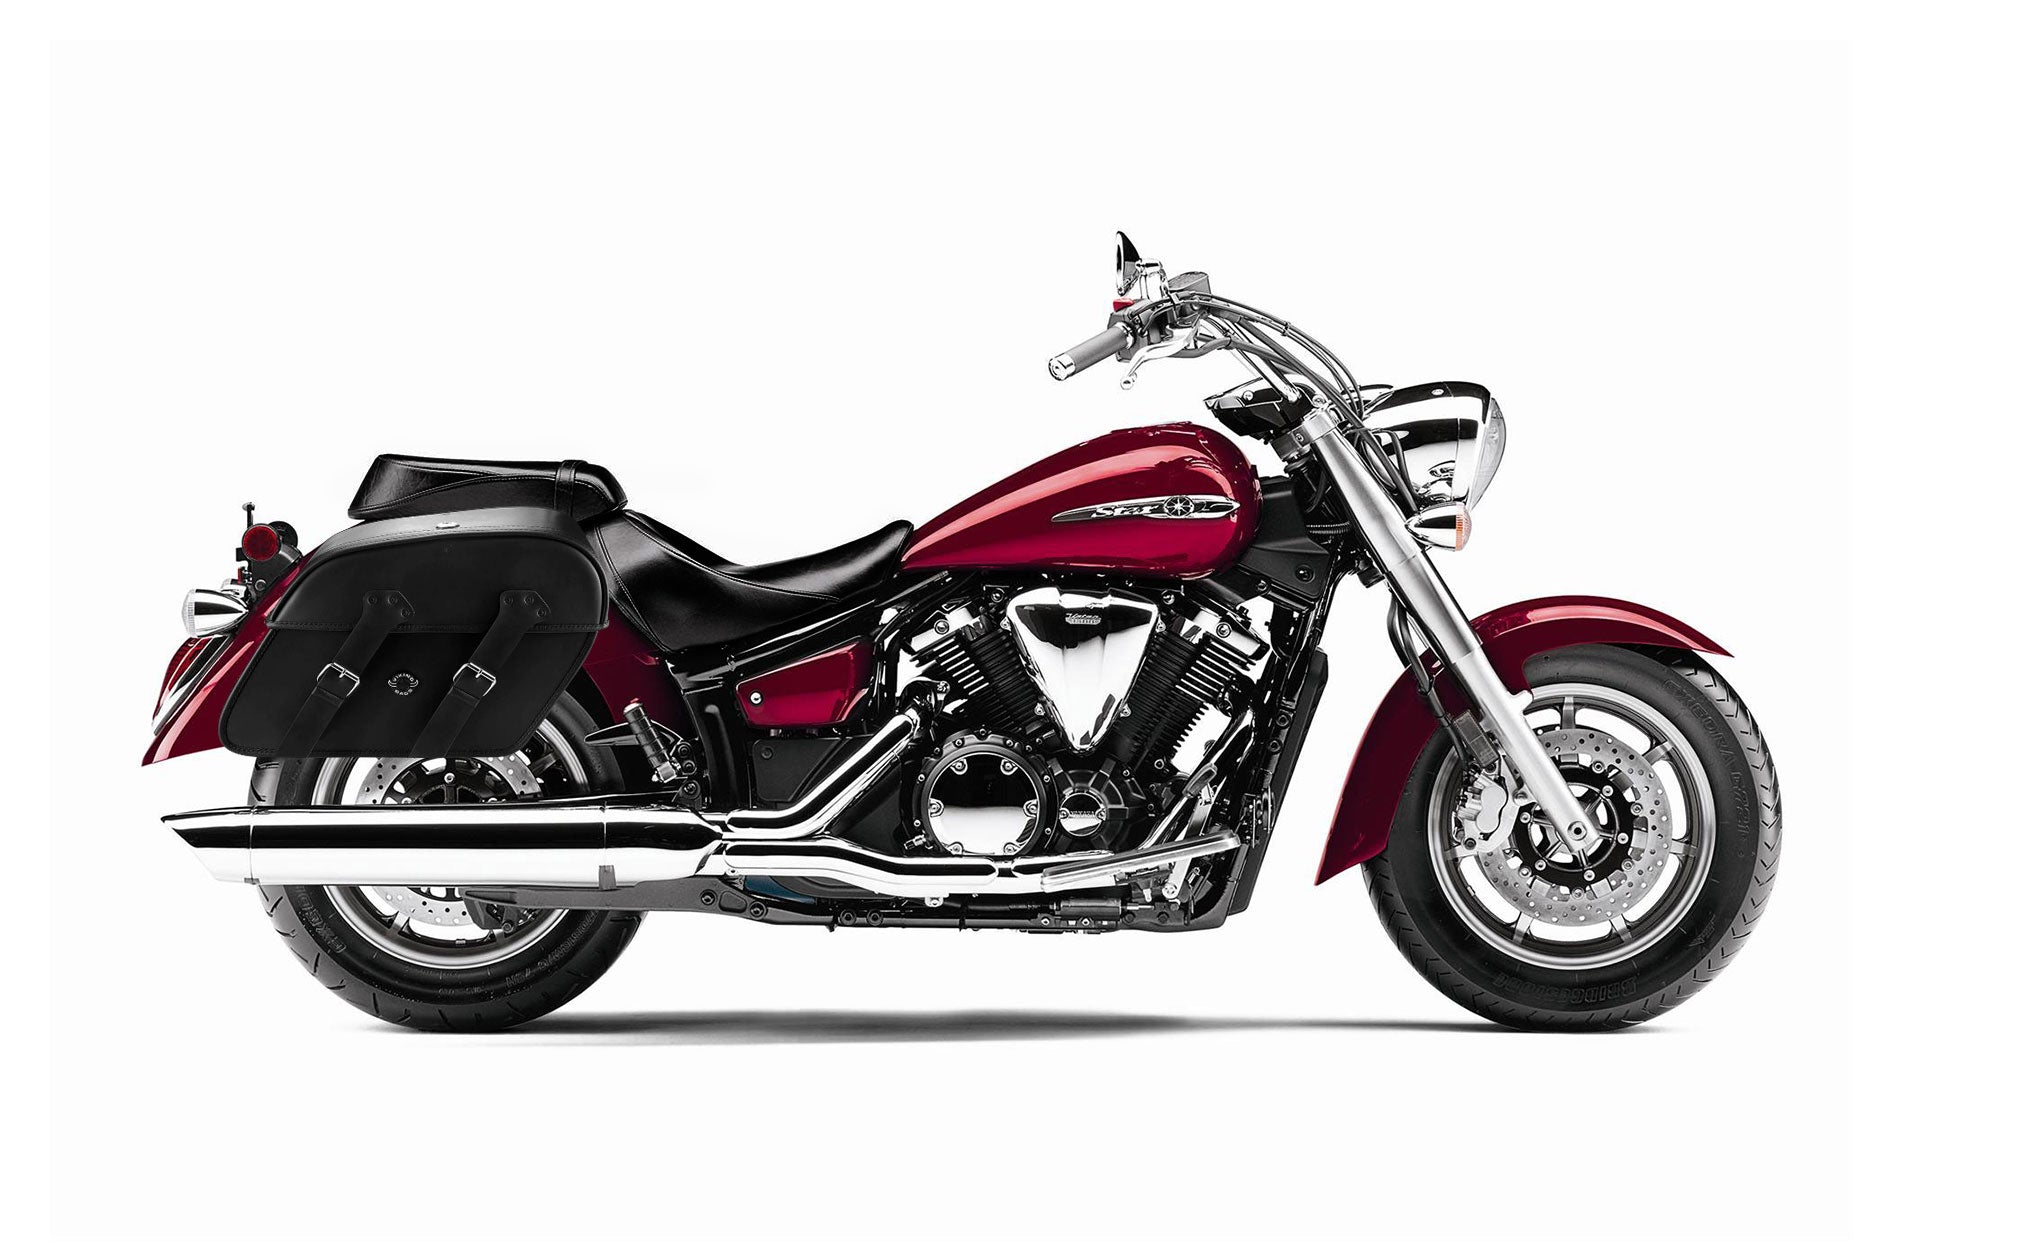 Viking Raven Extra Large Yamaha V Star 1300 Classic Xvs1300A Leather Motorcycle Saddlebags on Bike Photo @expand